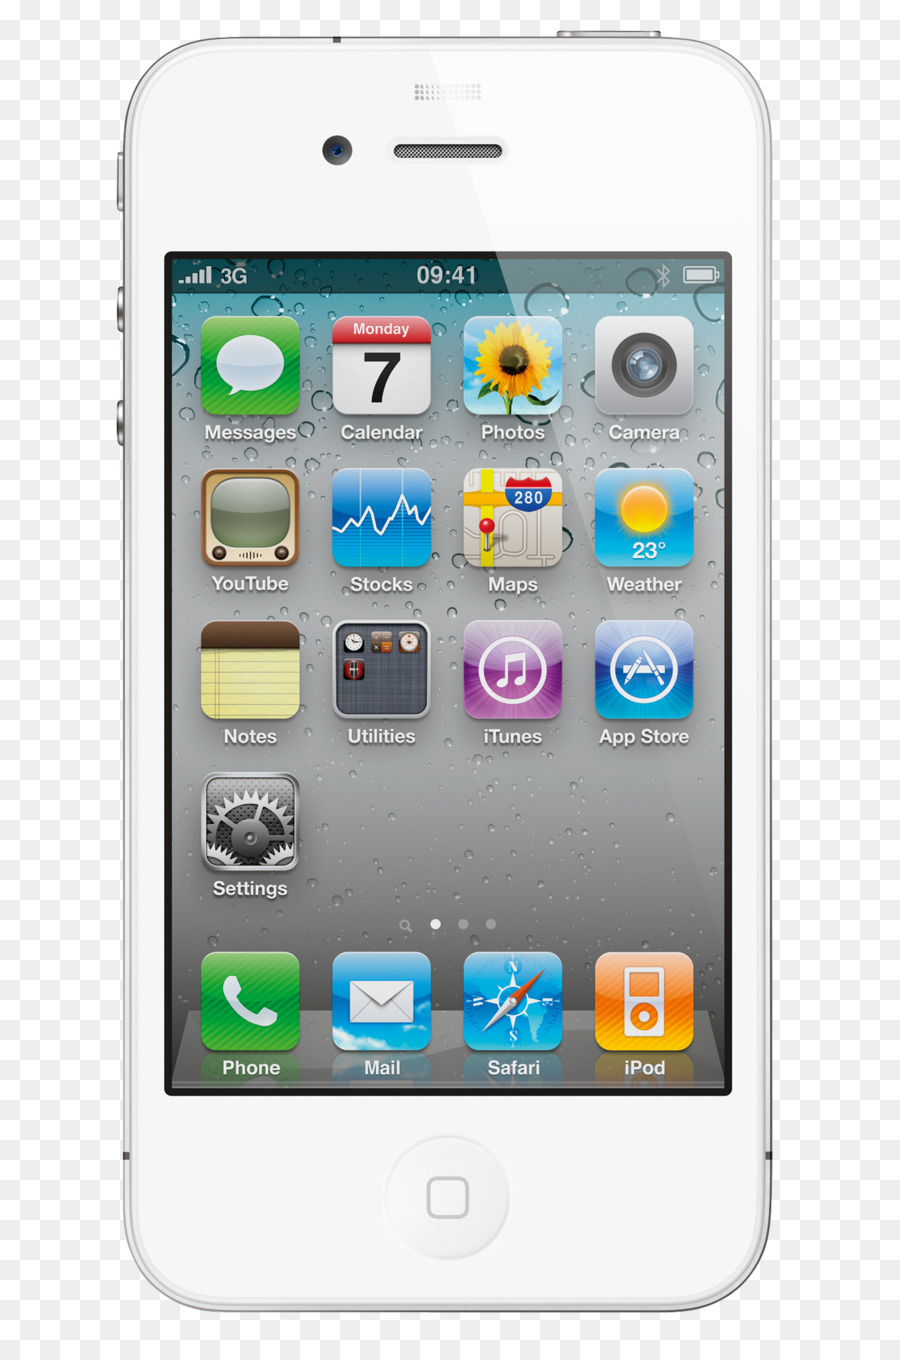 iPhone 4S 5s iPhone iPhone 5c - iphone di apple